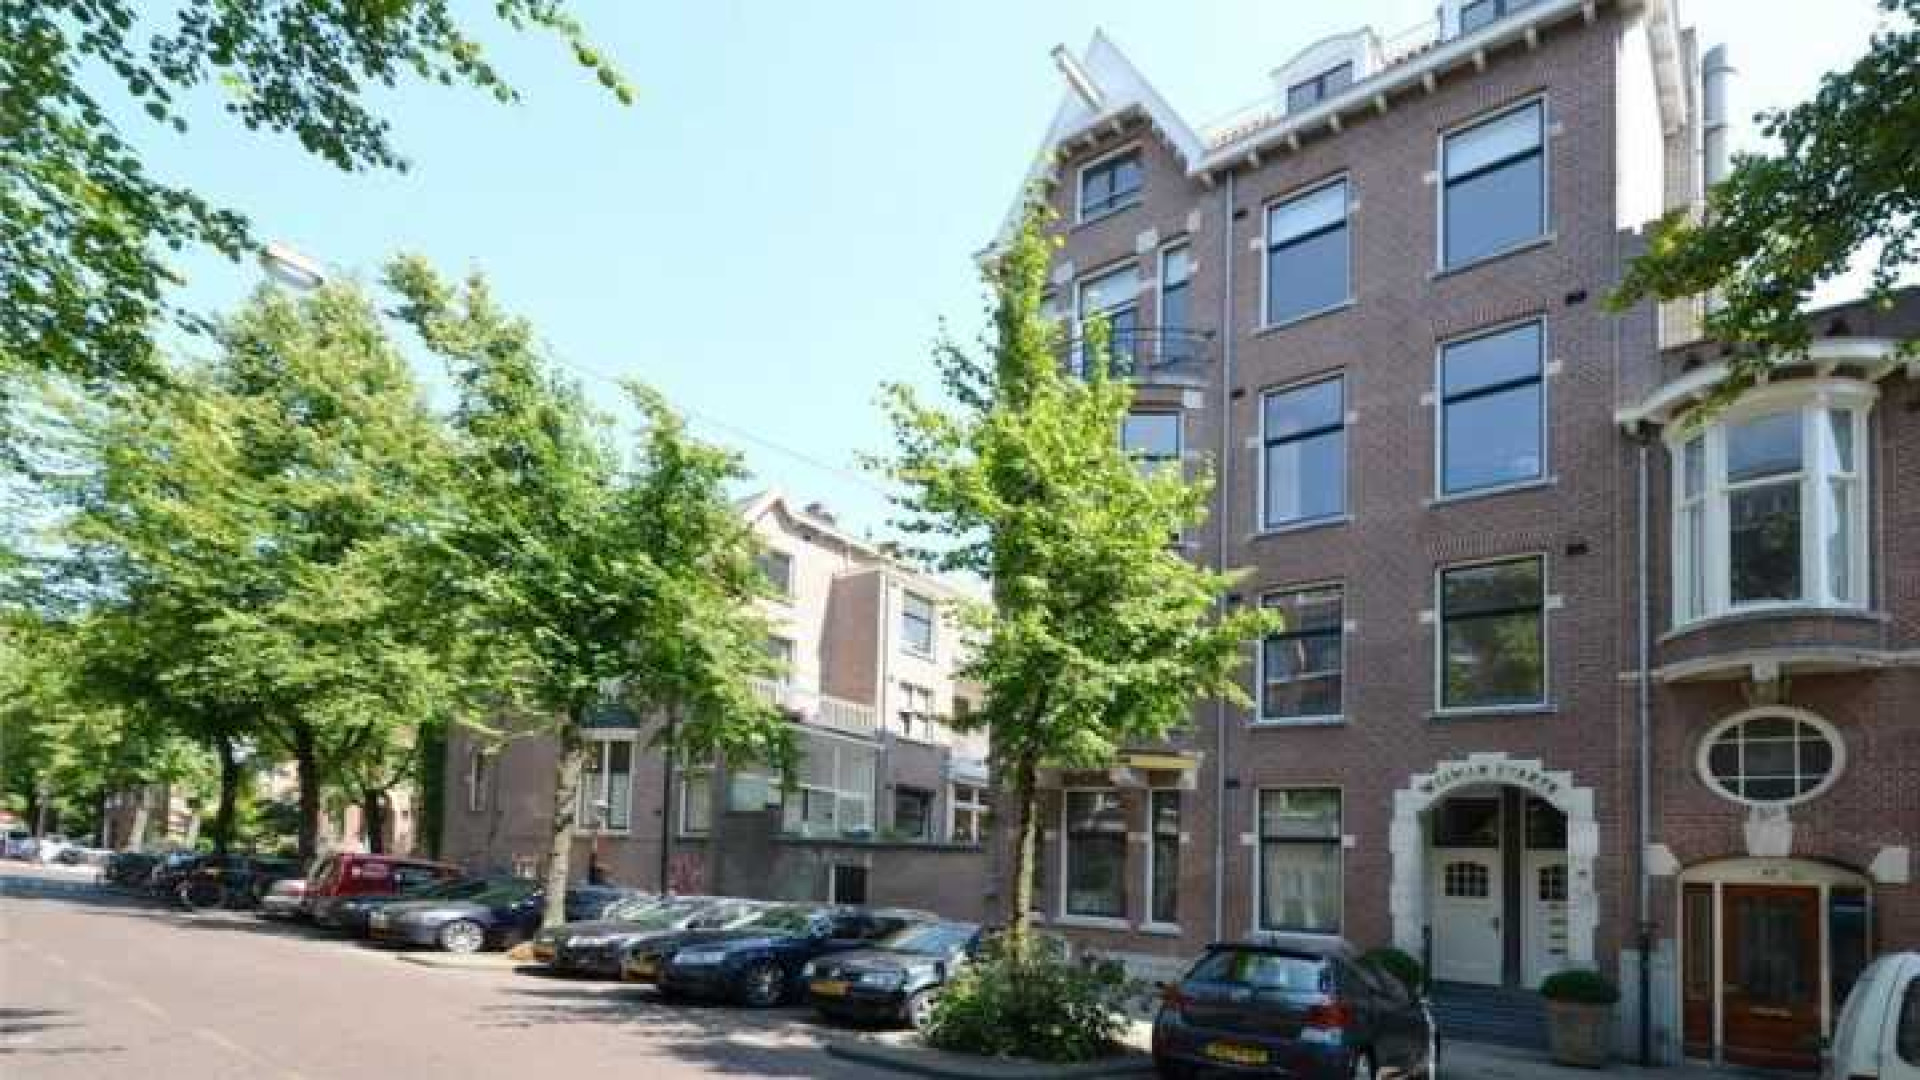 Frank Rijkaard vindt huurder voor dit zeer luxe appartement met jacuzzi op dakterras. Zie foto's 34